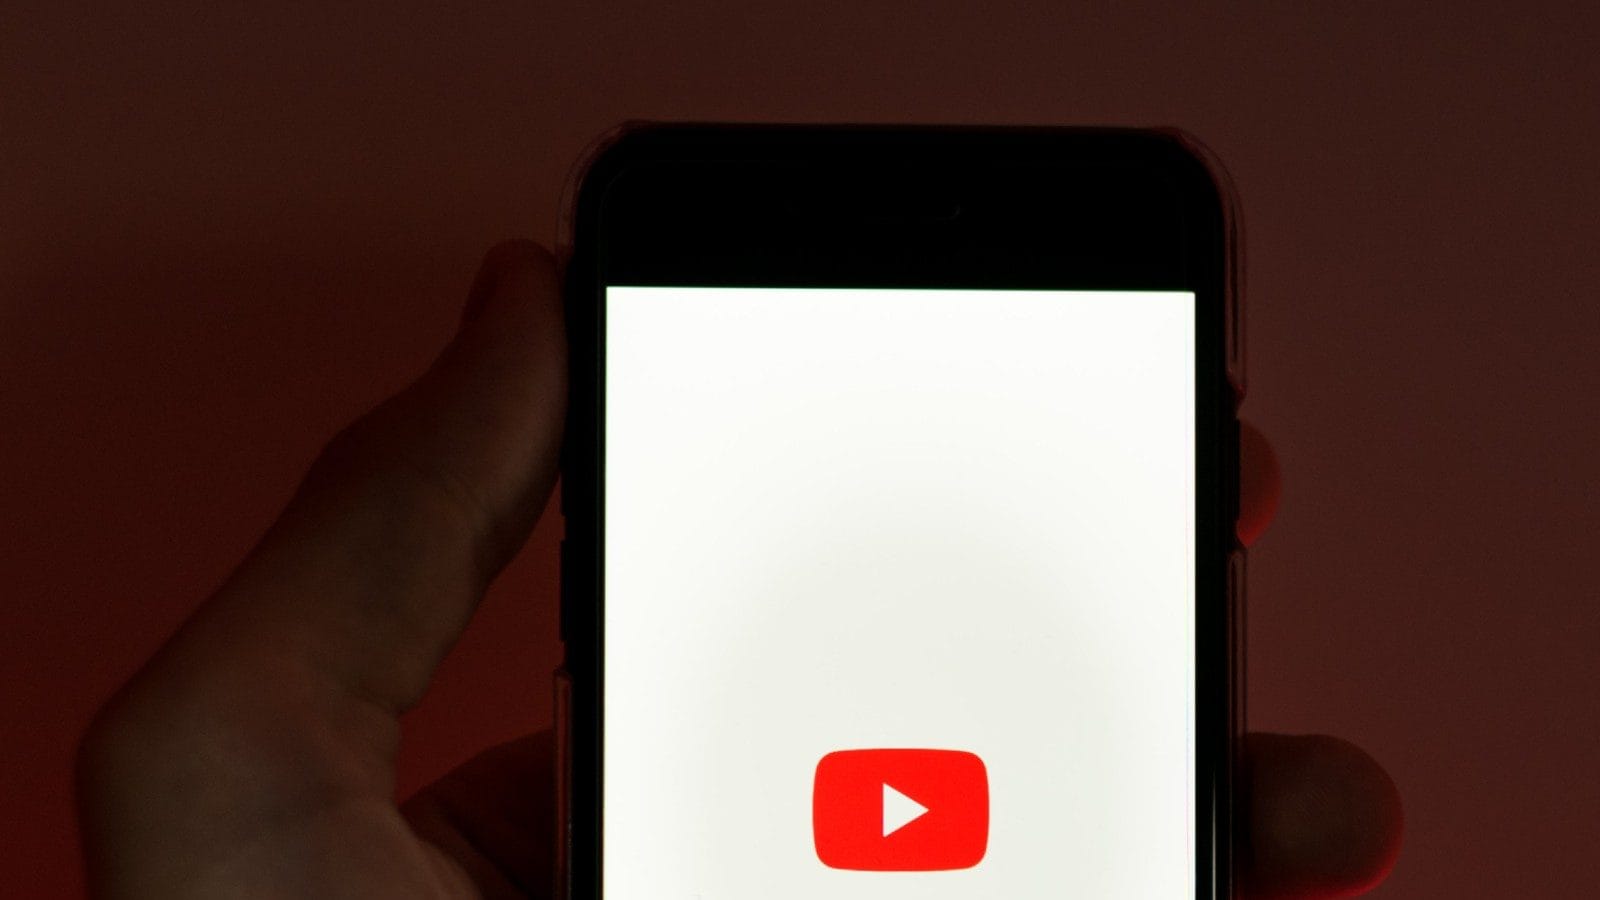 YouTube agregará una marca de agua a cada video corto que descargues: ¿qué significa eso?